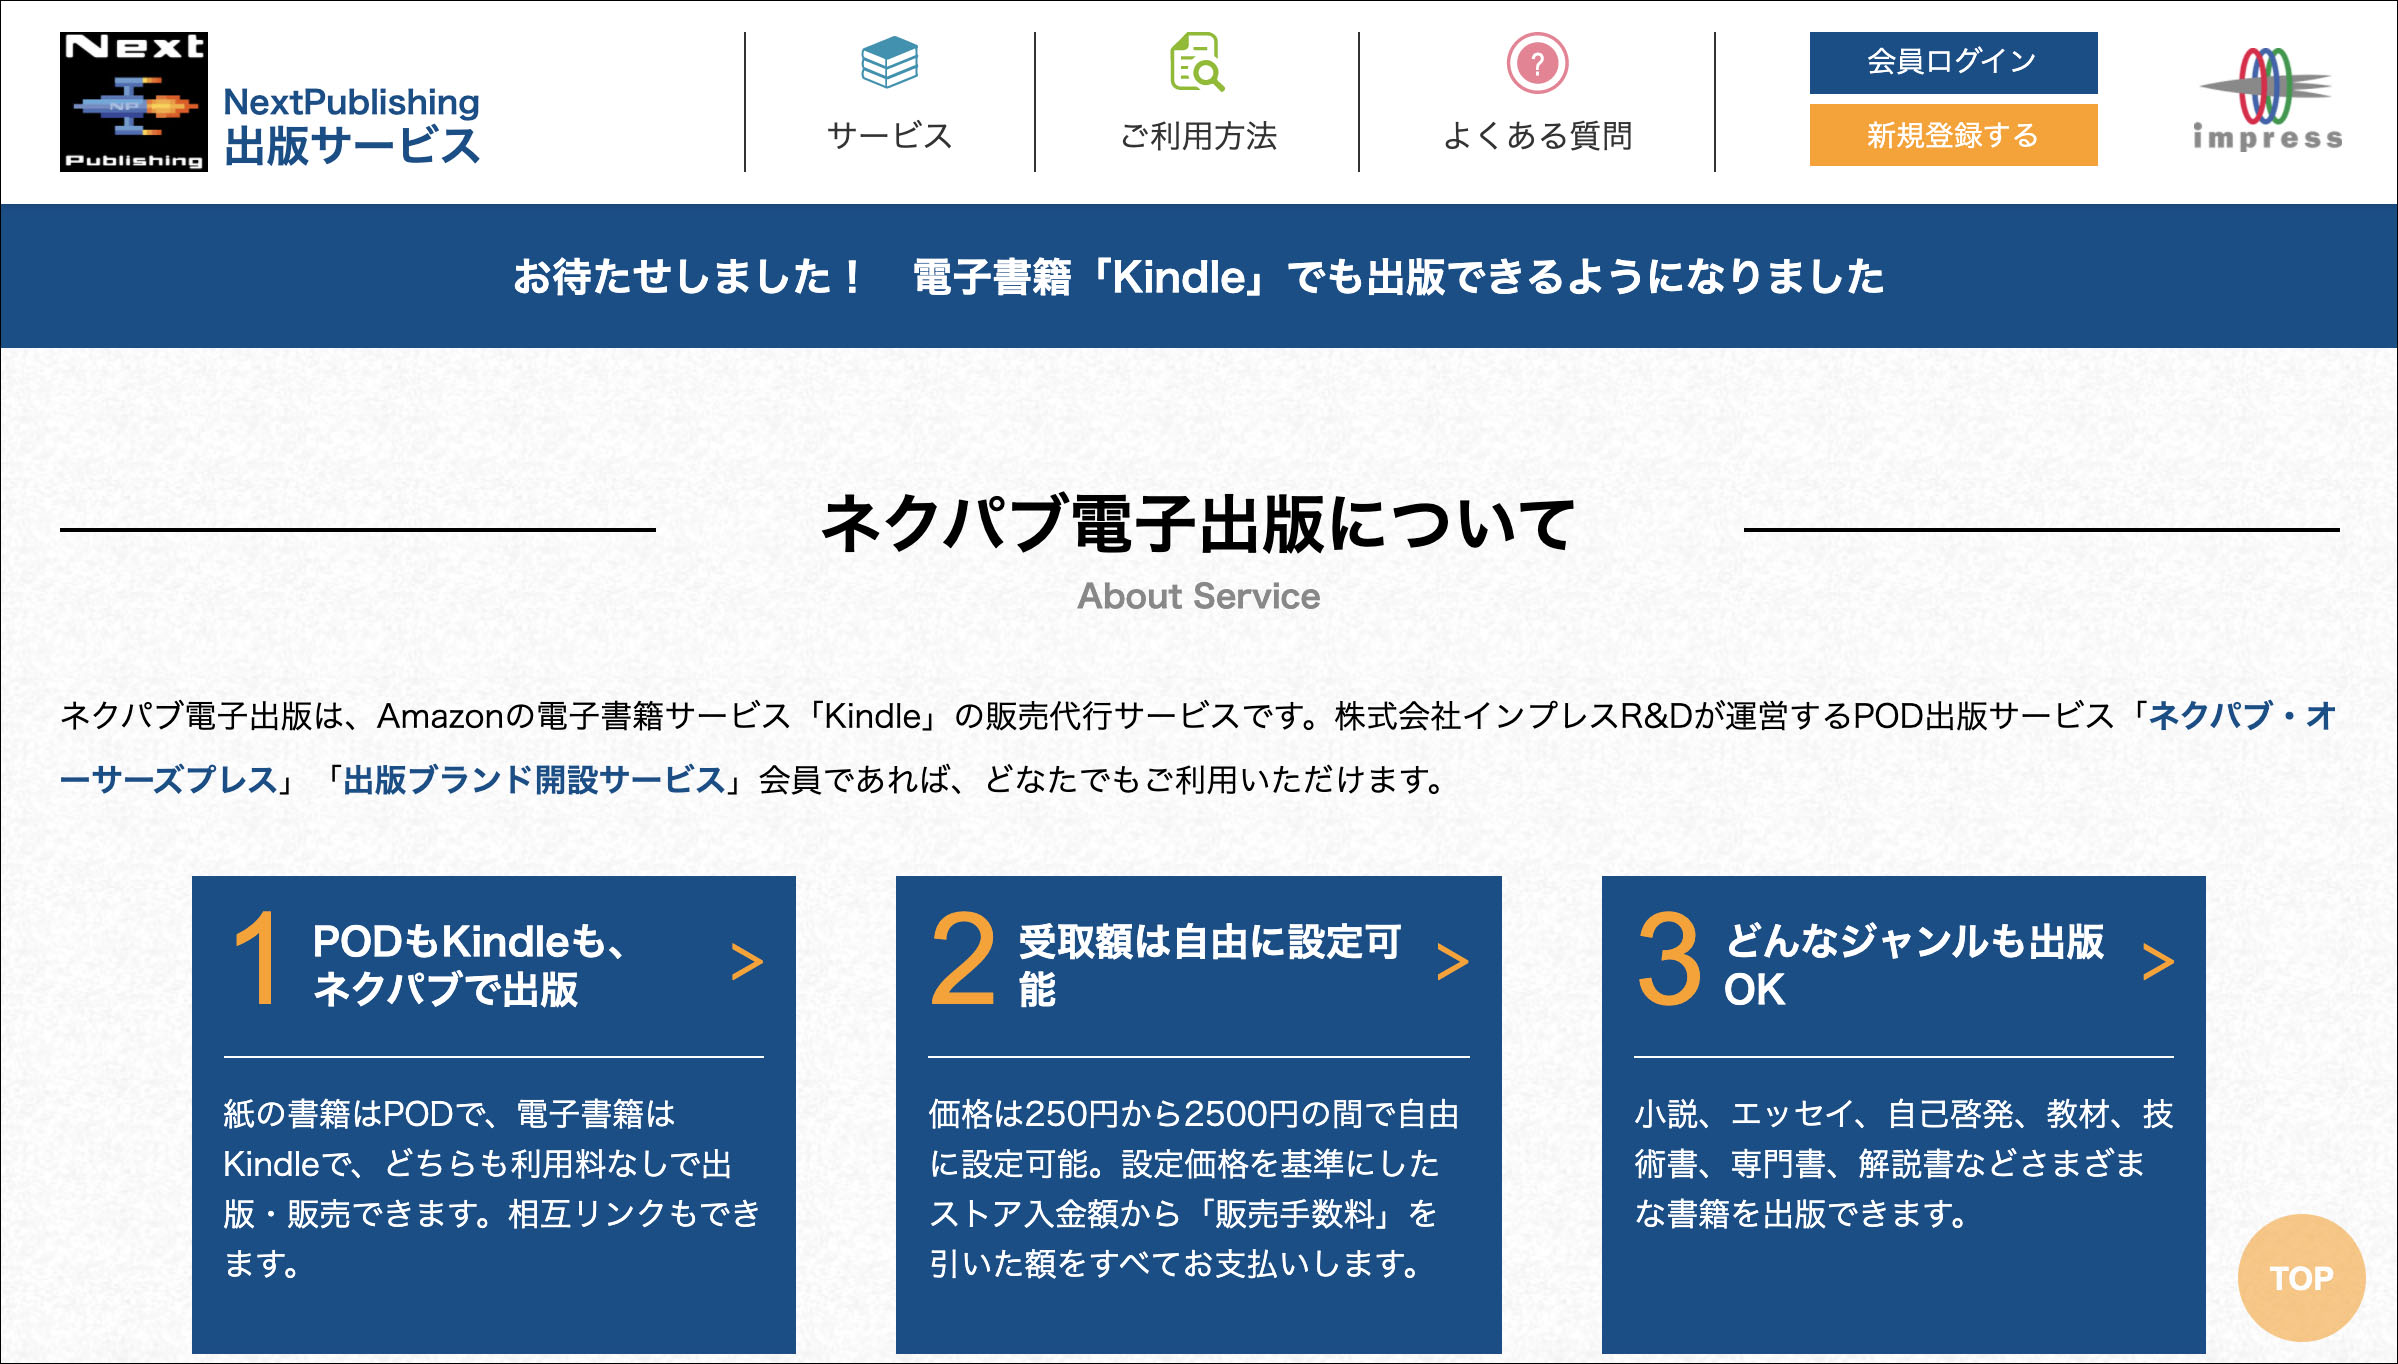 日本最大の個人向けpod出版販売サービス ネクパブ オーサーズプレス がkindle電子書籍の取扱いを開始 株式会社 インプレスホールディングスのプレスリリース